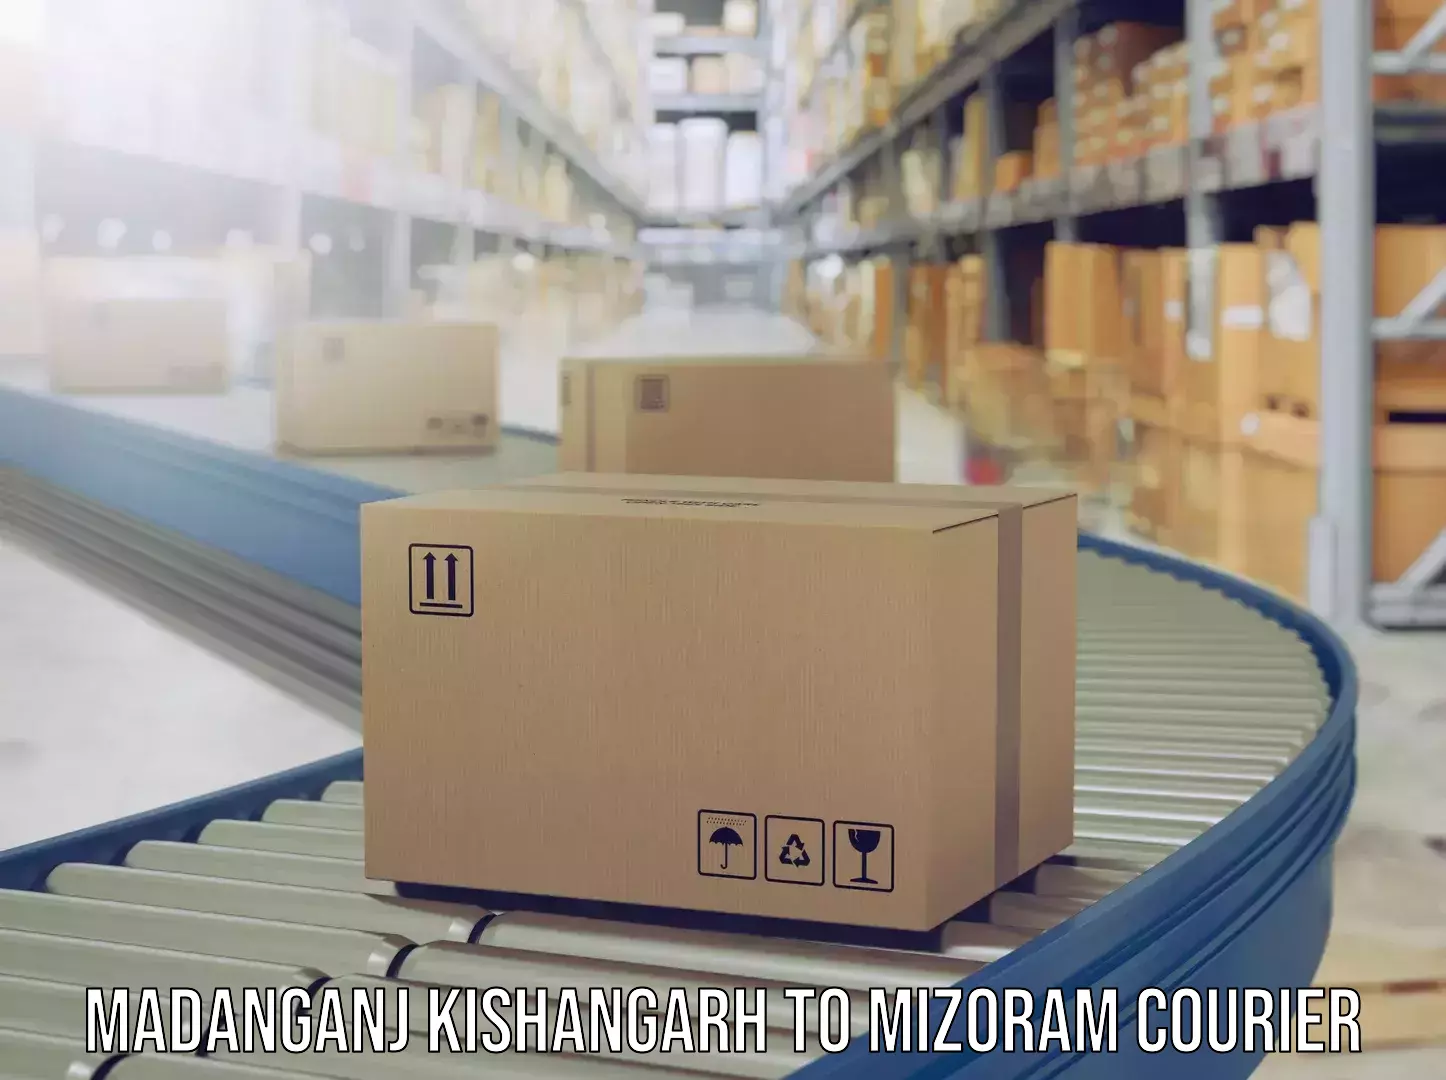 Luggage transit service Madanganj Kishangarh to Mizoram